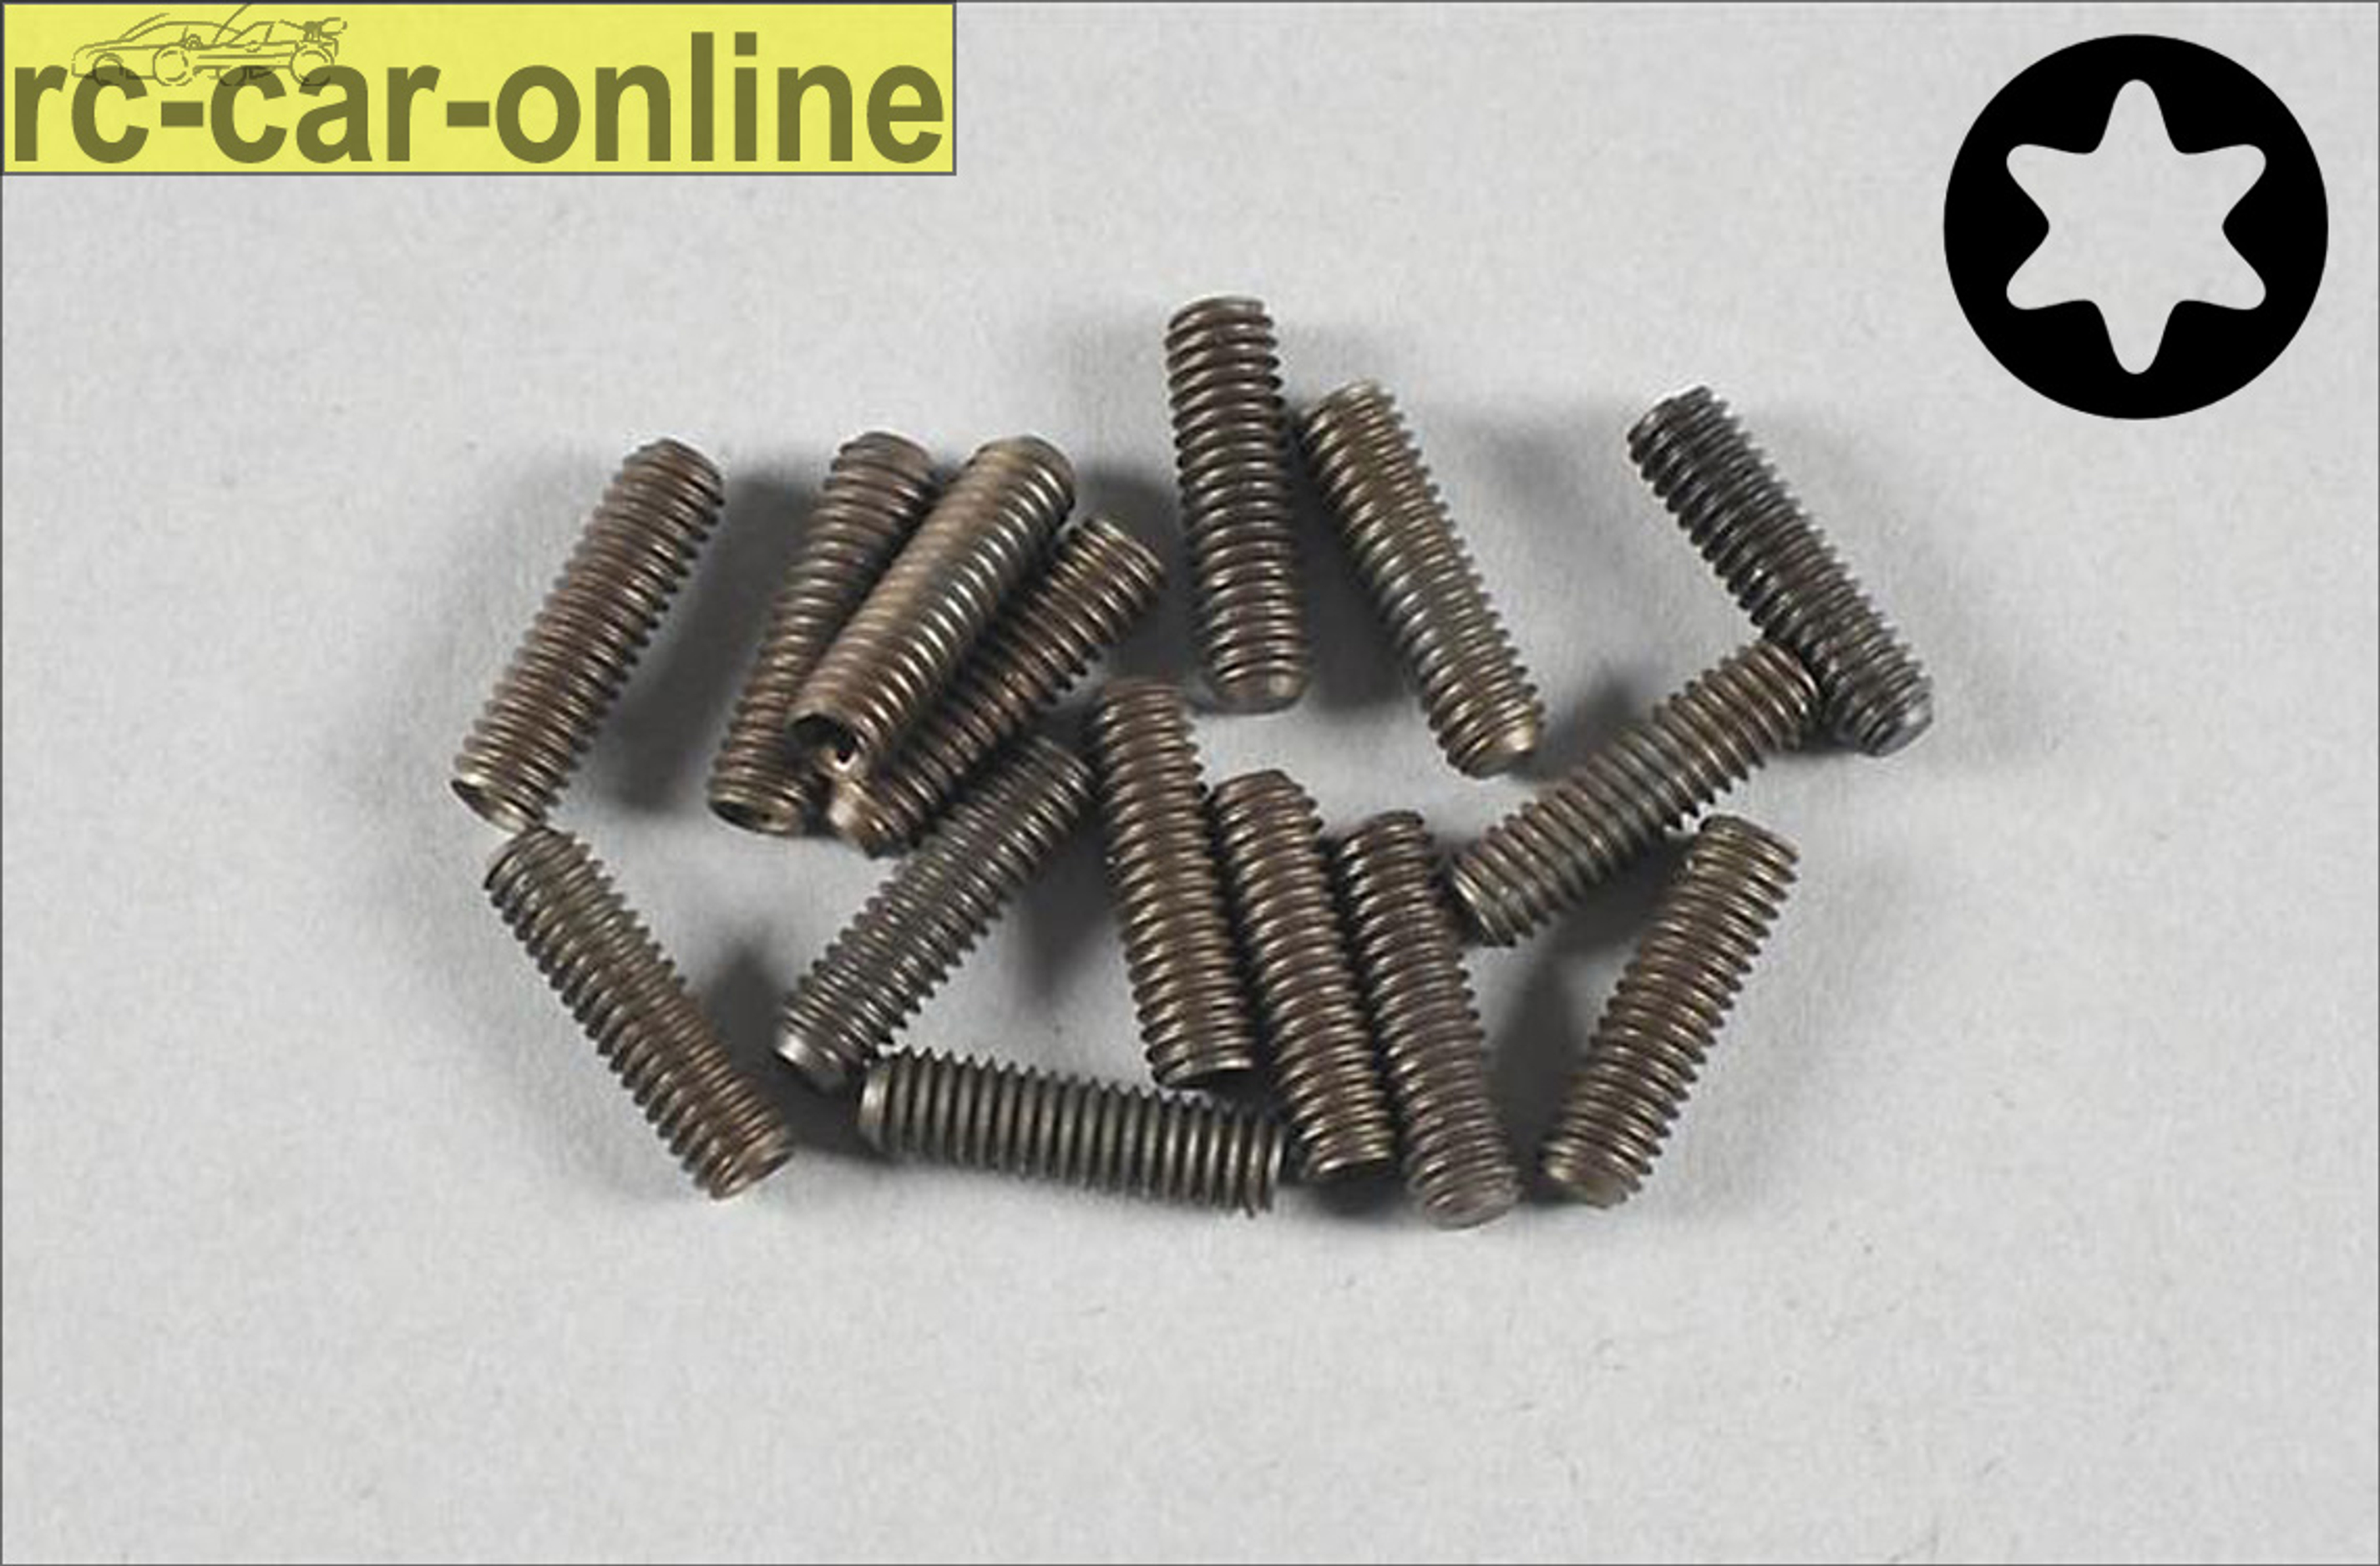 6929/14 FG Grub screw with Torx M4x14 mm, 15 pieces